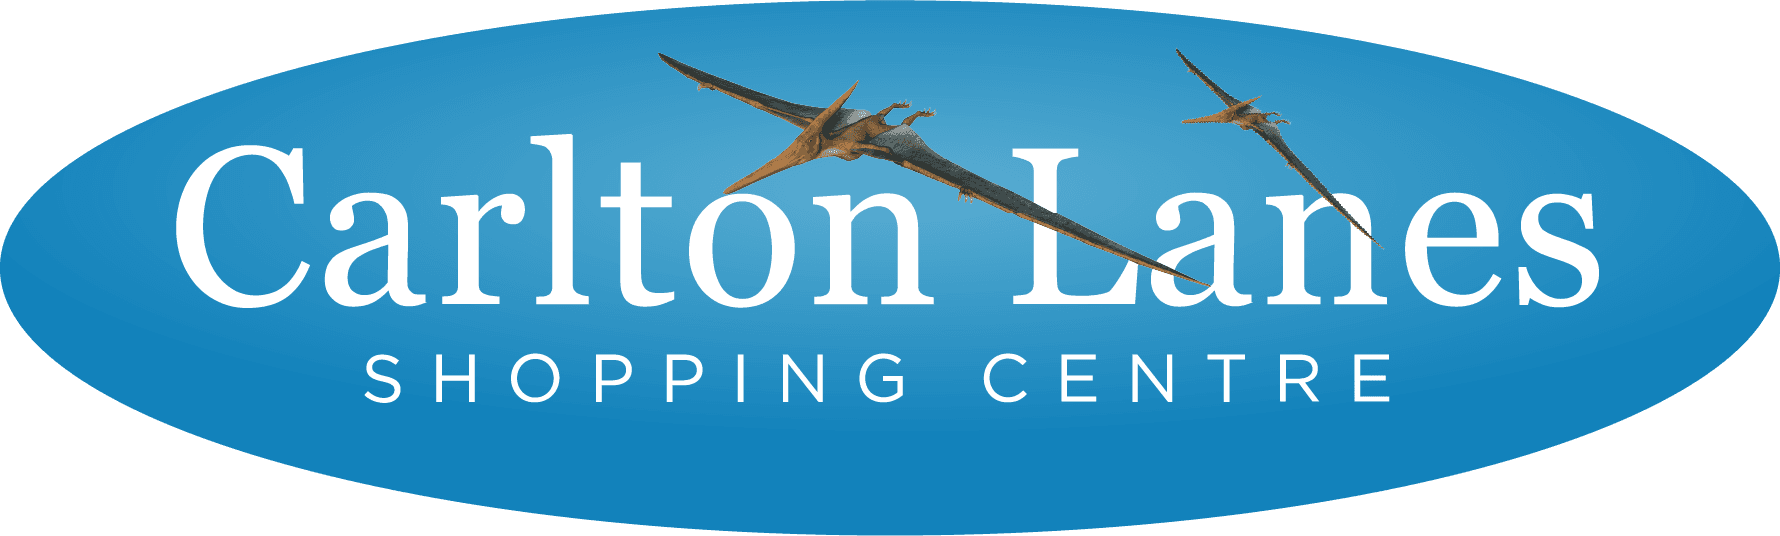 Carlton Lanes Shopping Centre Logo